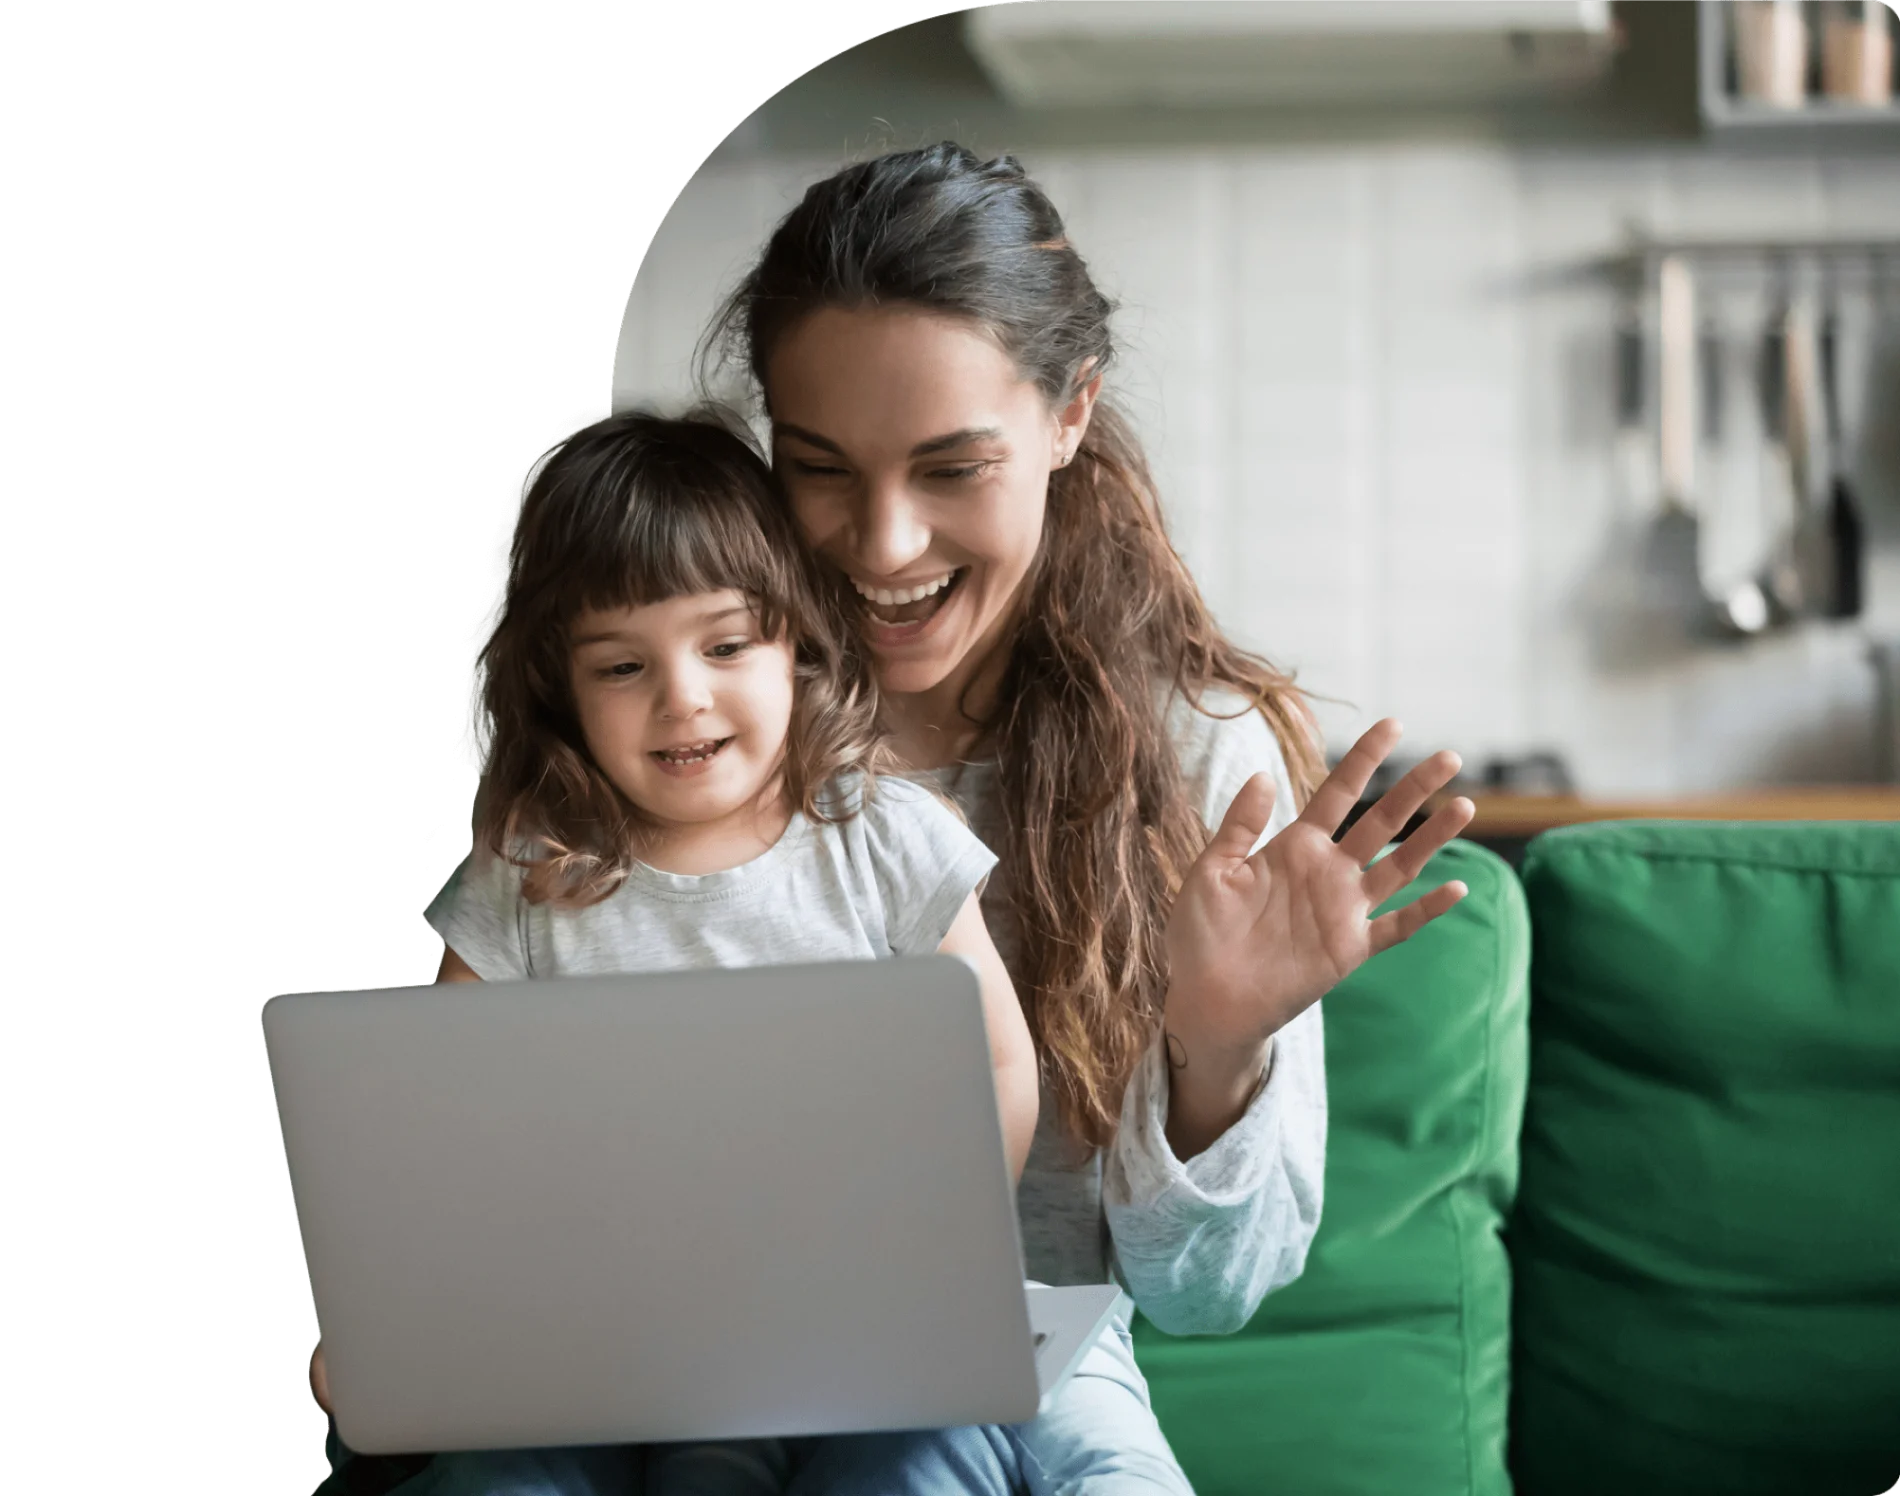 Une mère et sa fille regardent un ordinateur portable en souriant. La mère salue de la main un membre de la famille.